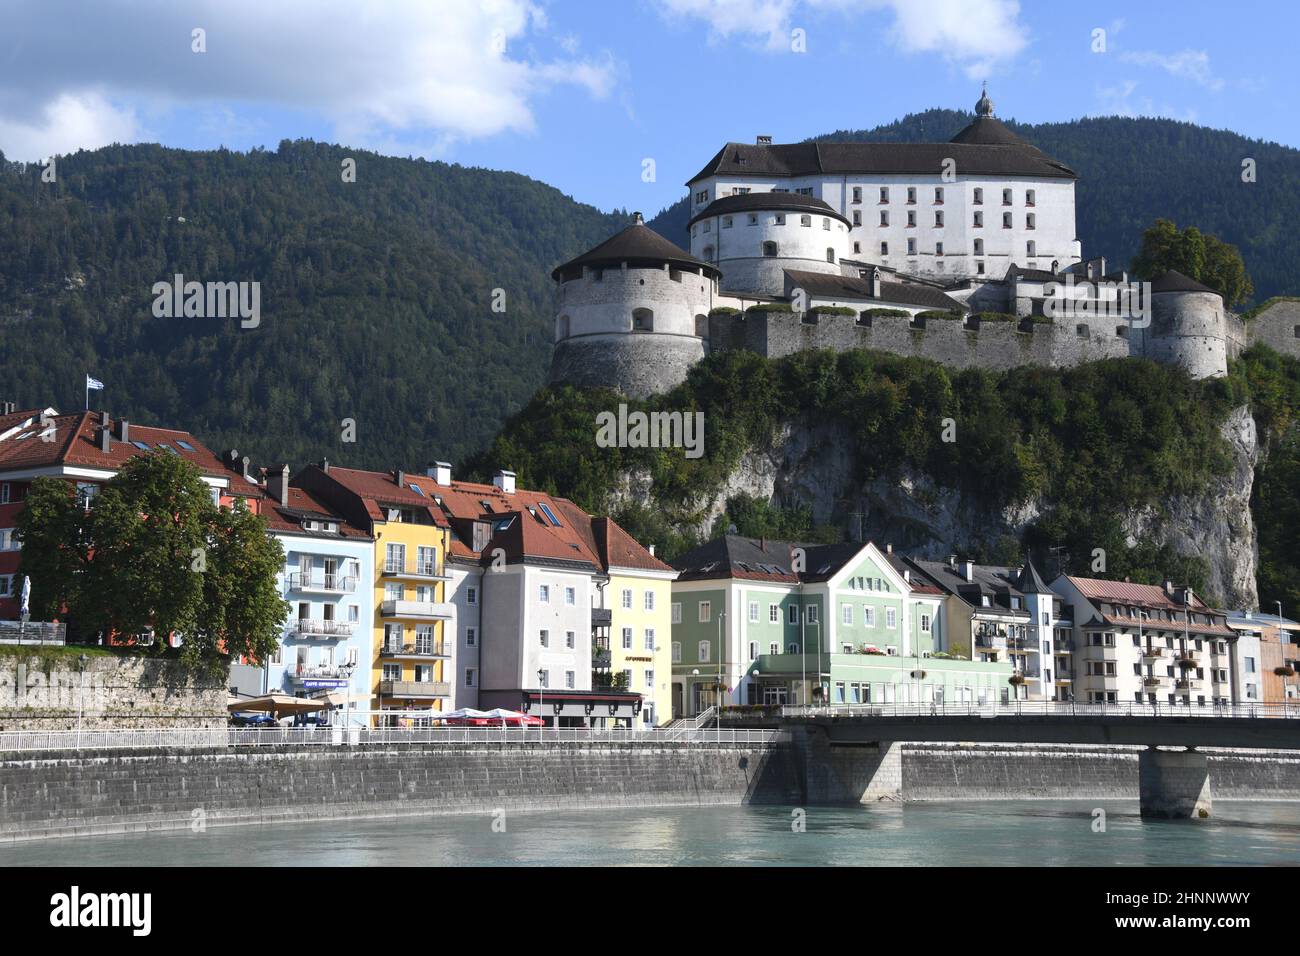 En 1205 la fortaleza de Kufstein en Austria, Tirol fue mencionada por primera vez en un documento. La fortaleza es el punto de referencia de Kufstein. Está situado en la montaña de roca alta 90m directamente en el río Inn. Foto de stock